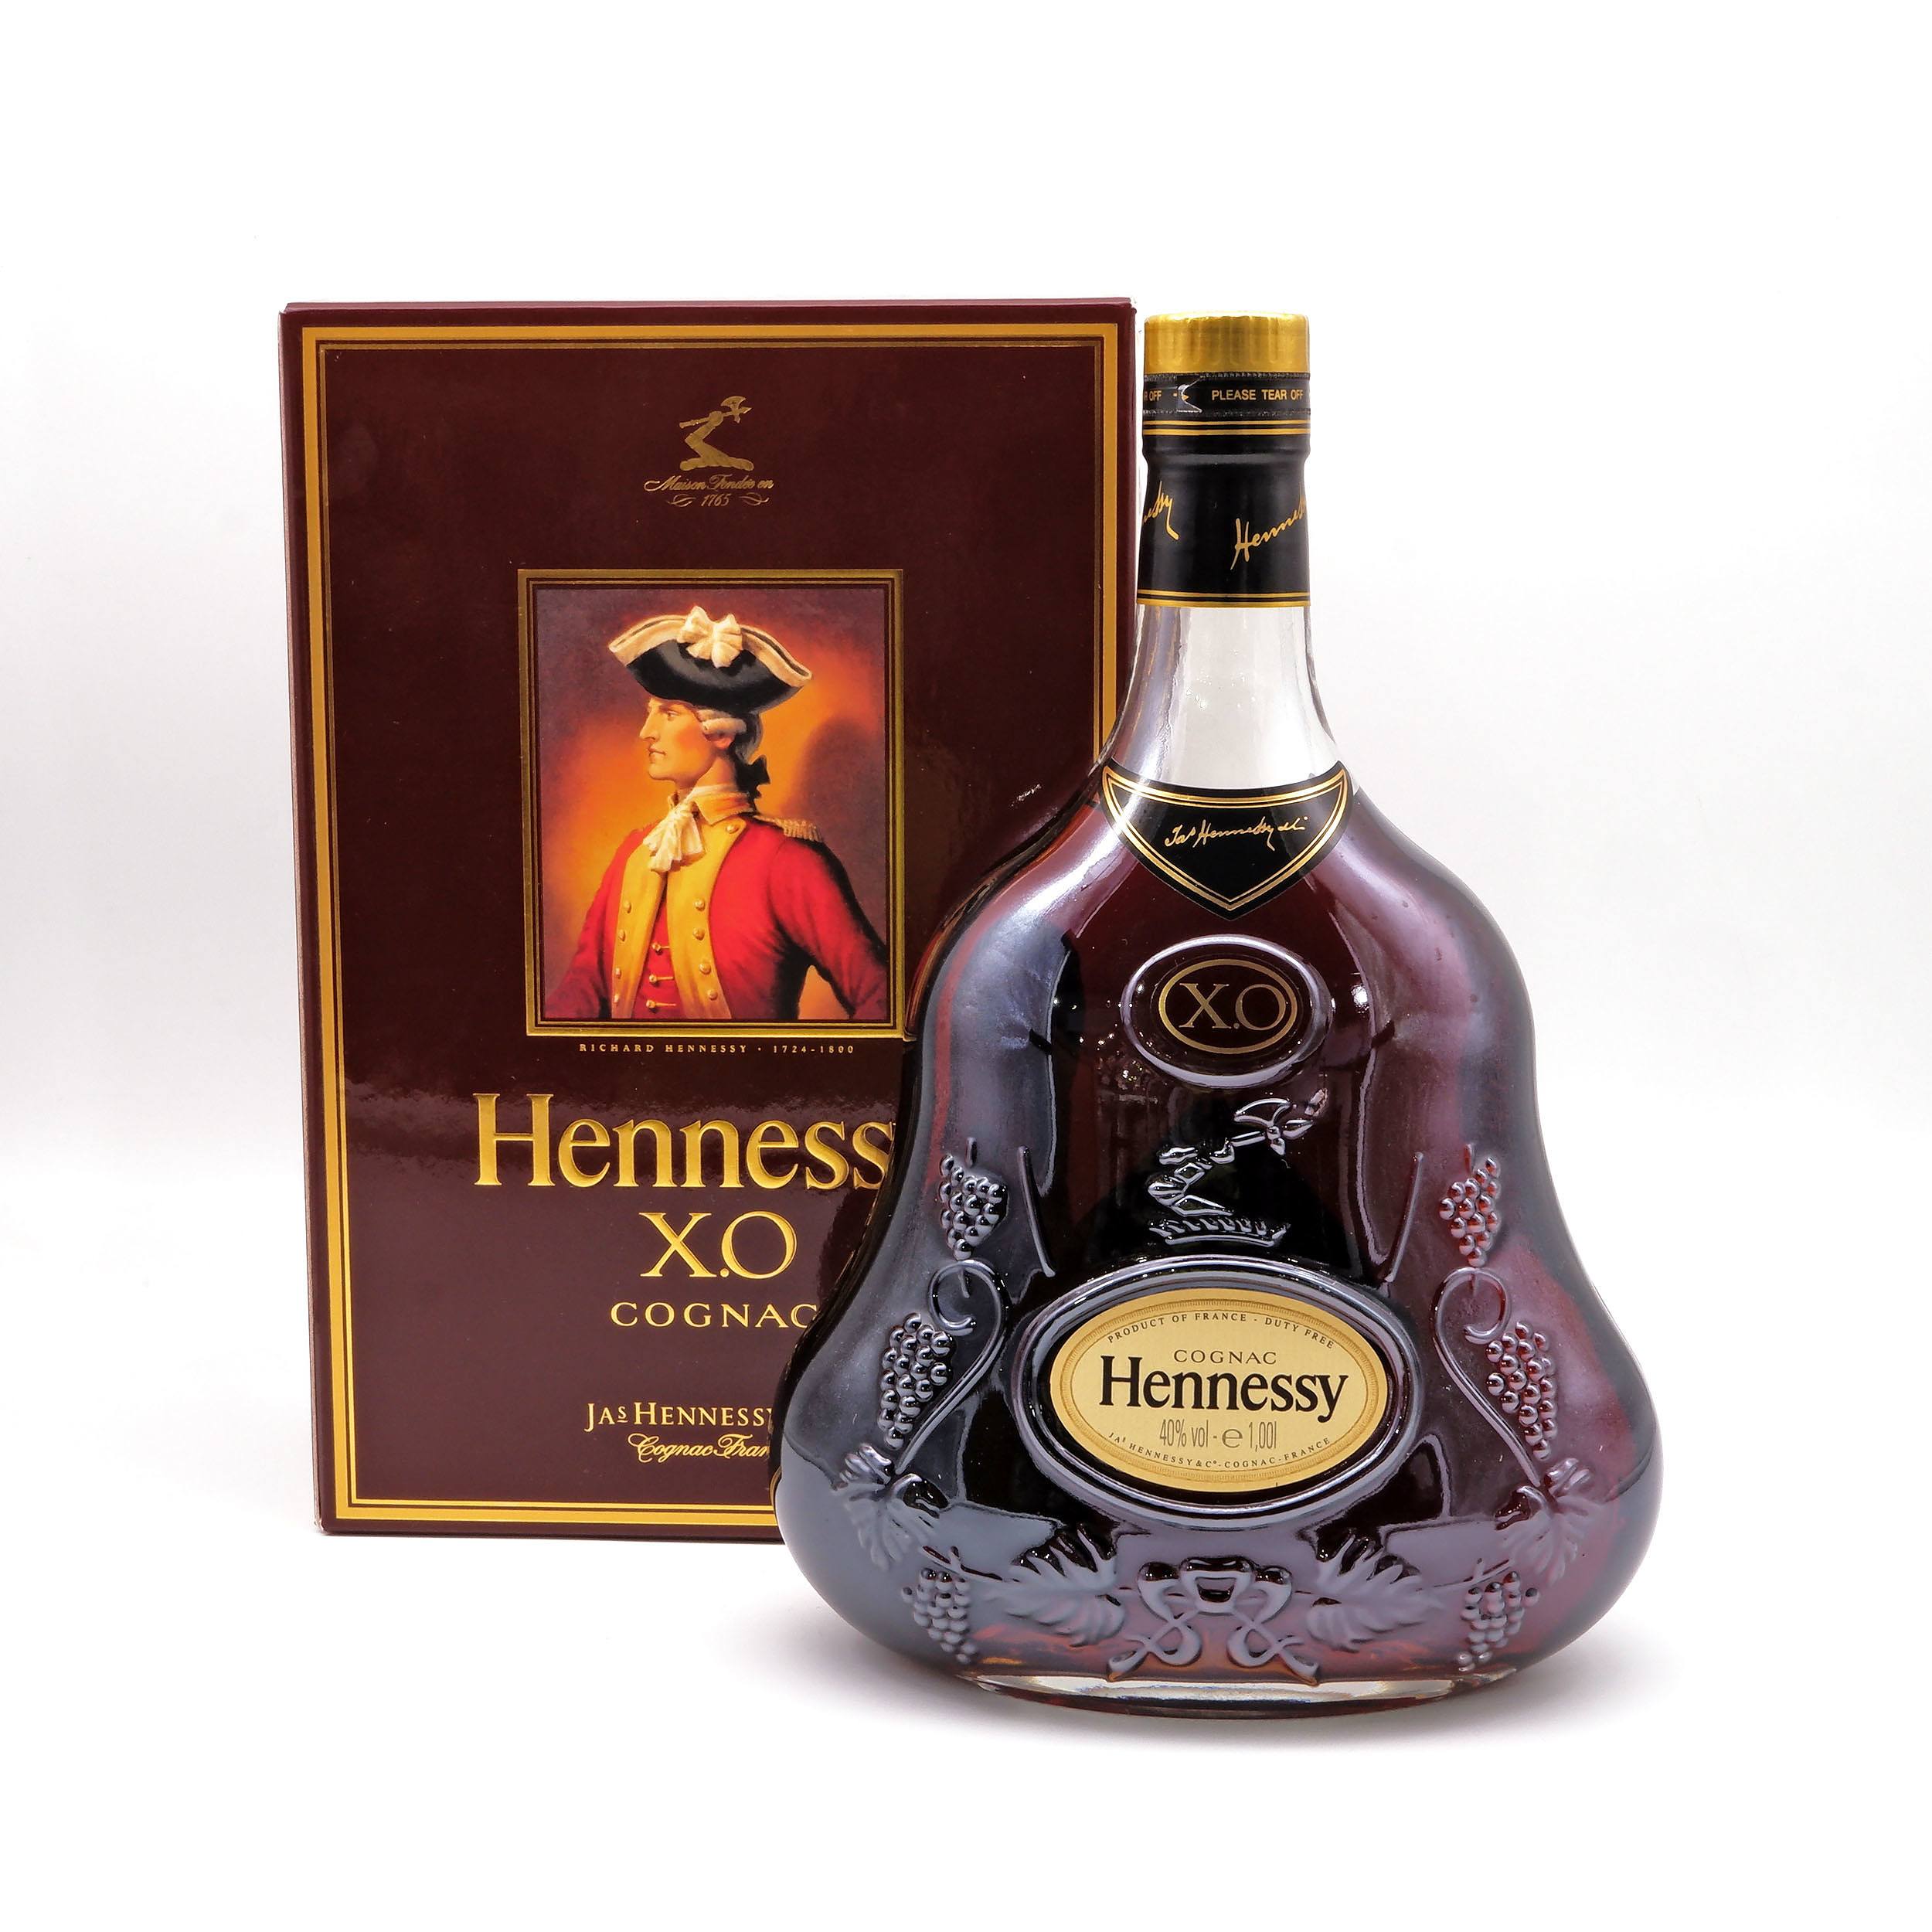 Хеннесси хо 0.5 оригинал. Коньяк XO. Hennessy XO. Армянский коньяк Хо. Армянский коньяк XO Cognac aged 10 years XO Brandy.